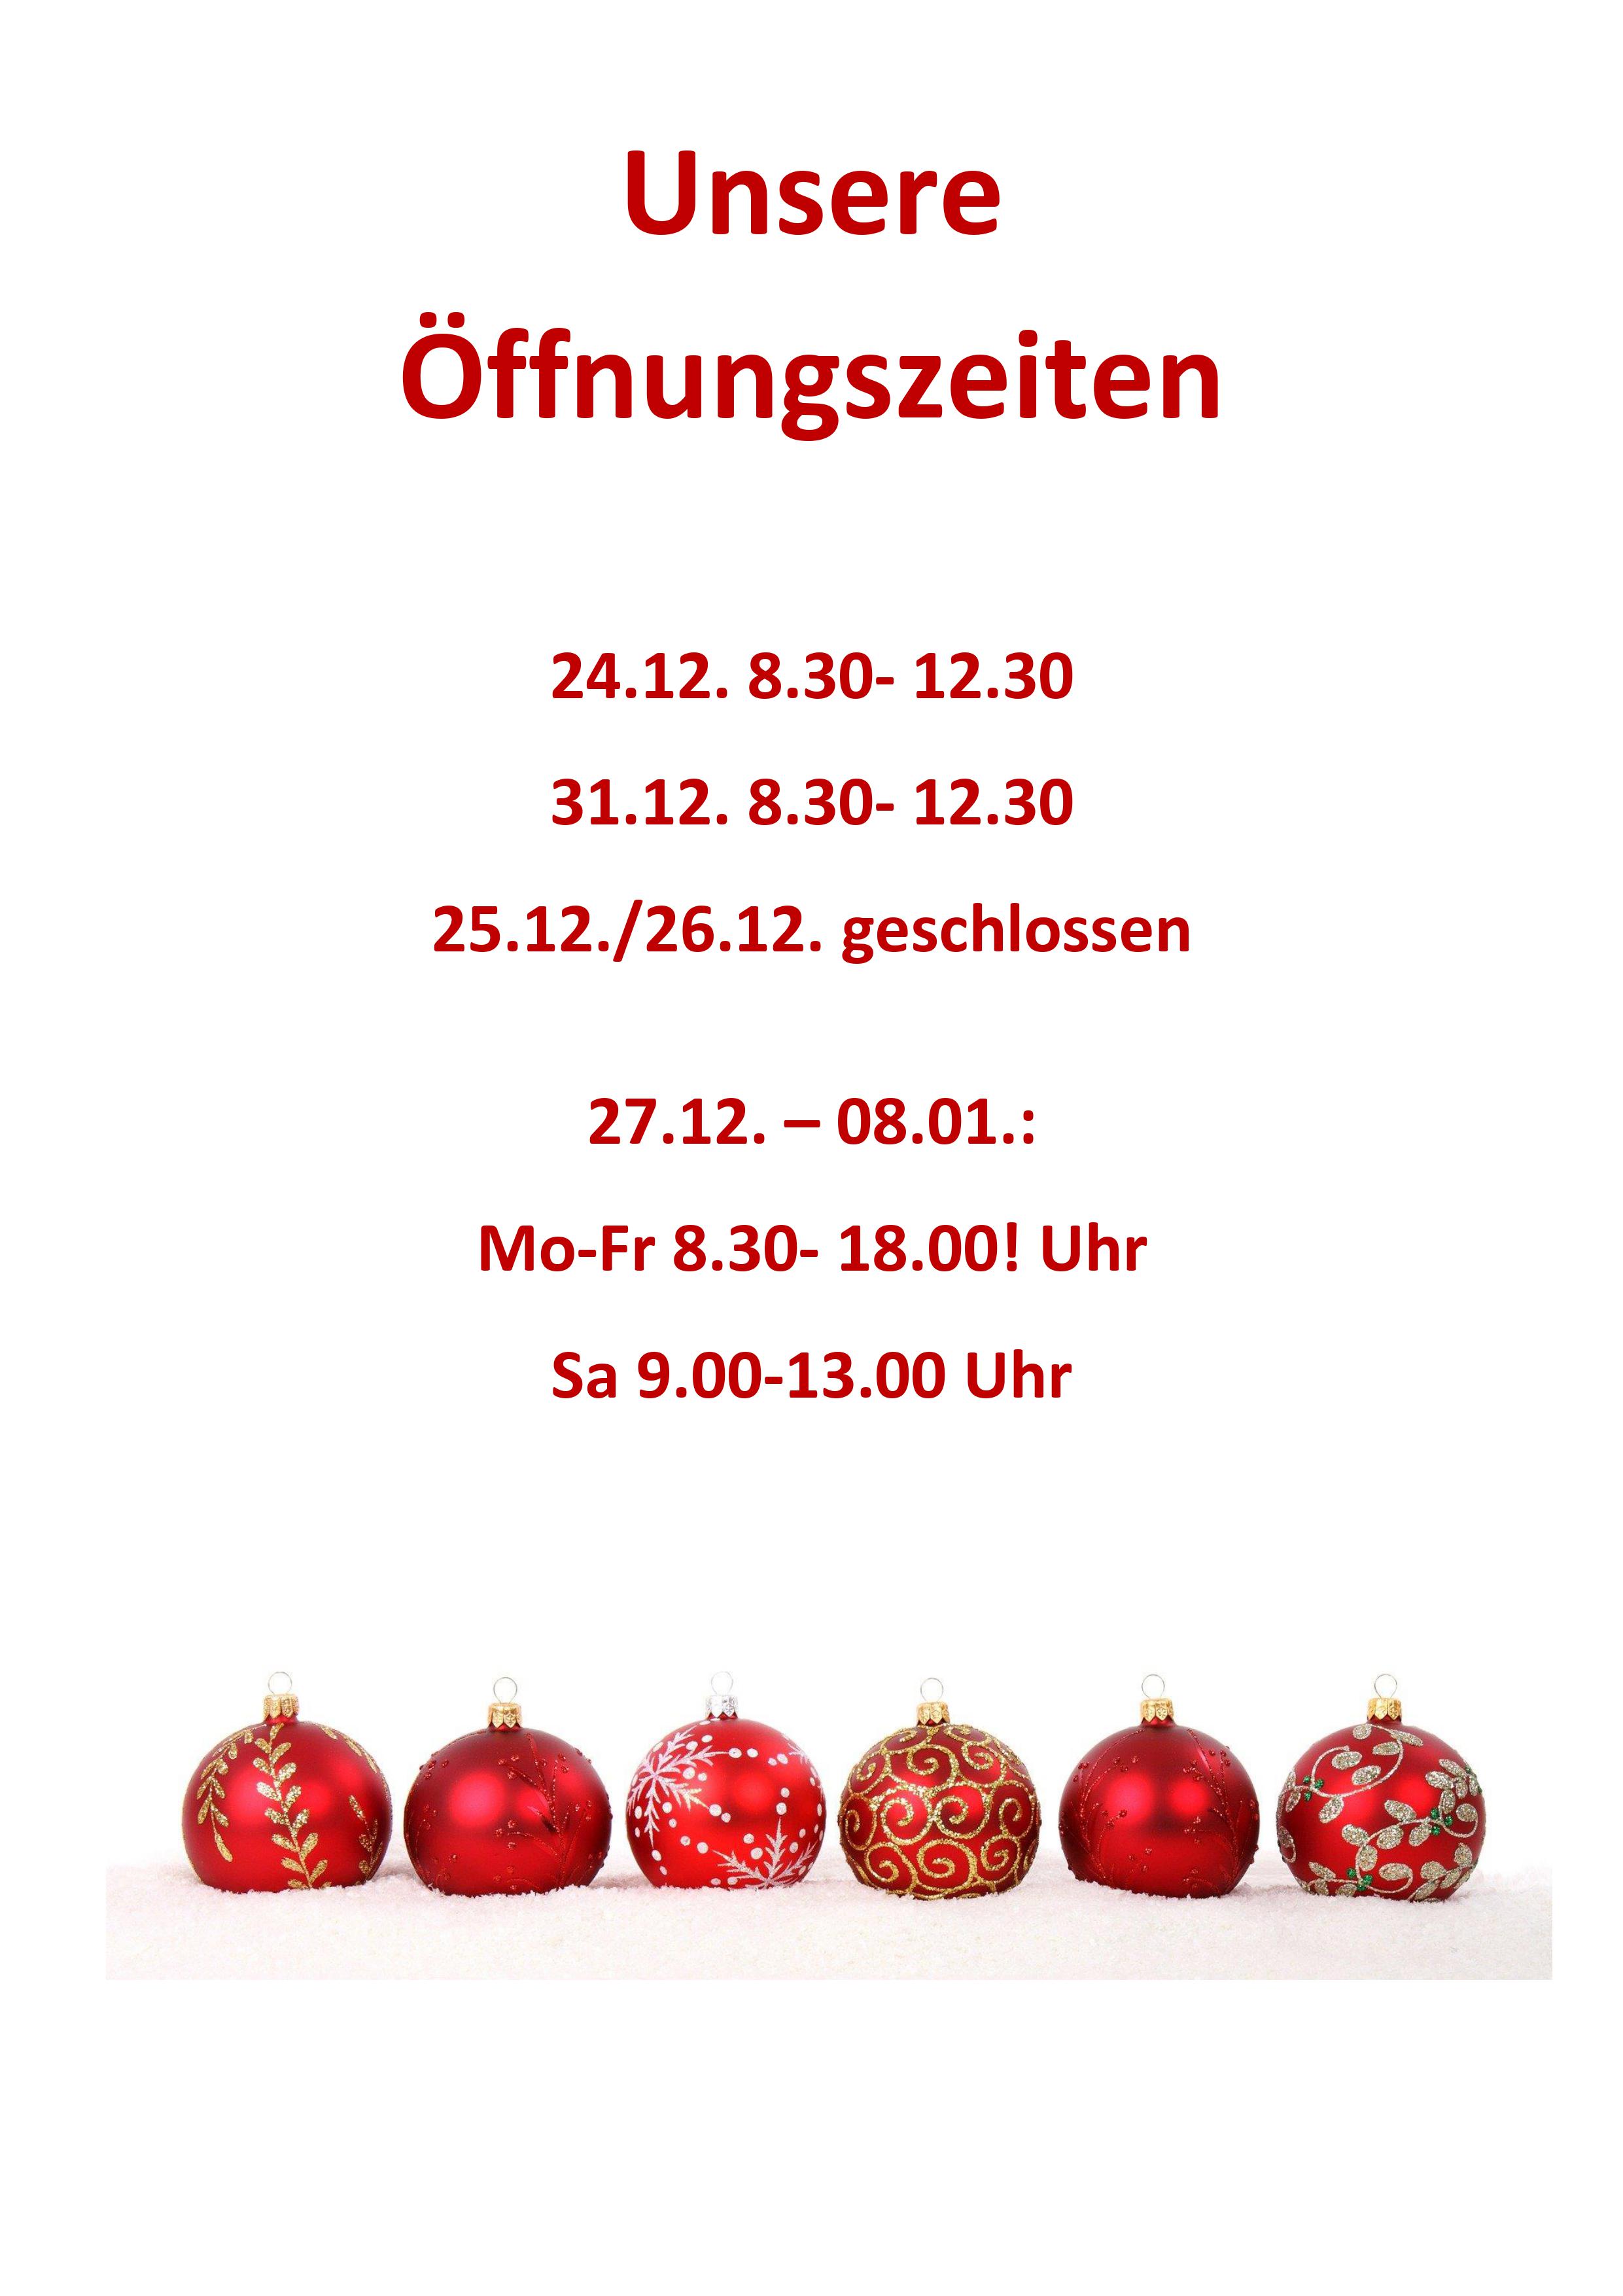 Öffnungszeiten_Weihnachten_Hochformat2021.jpg